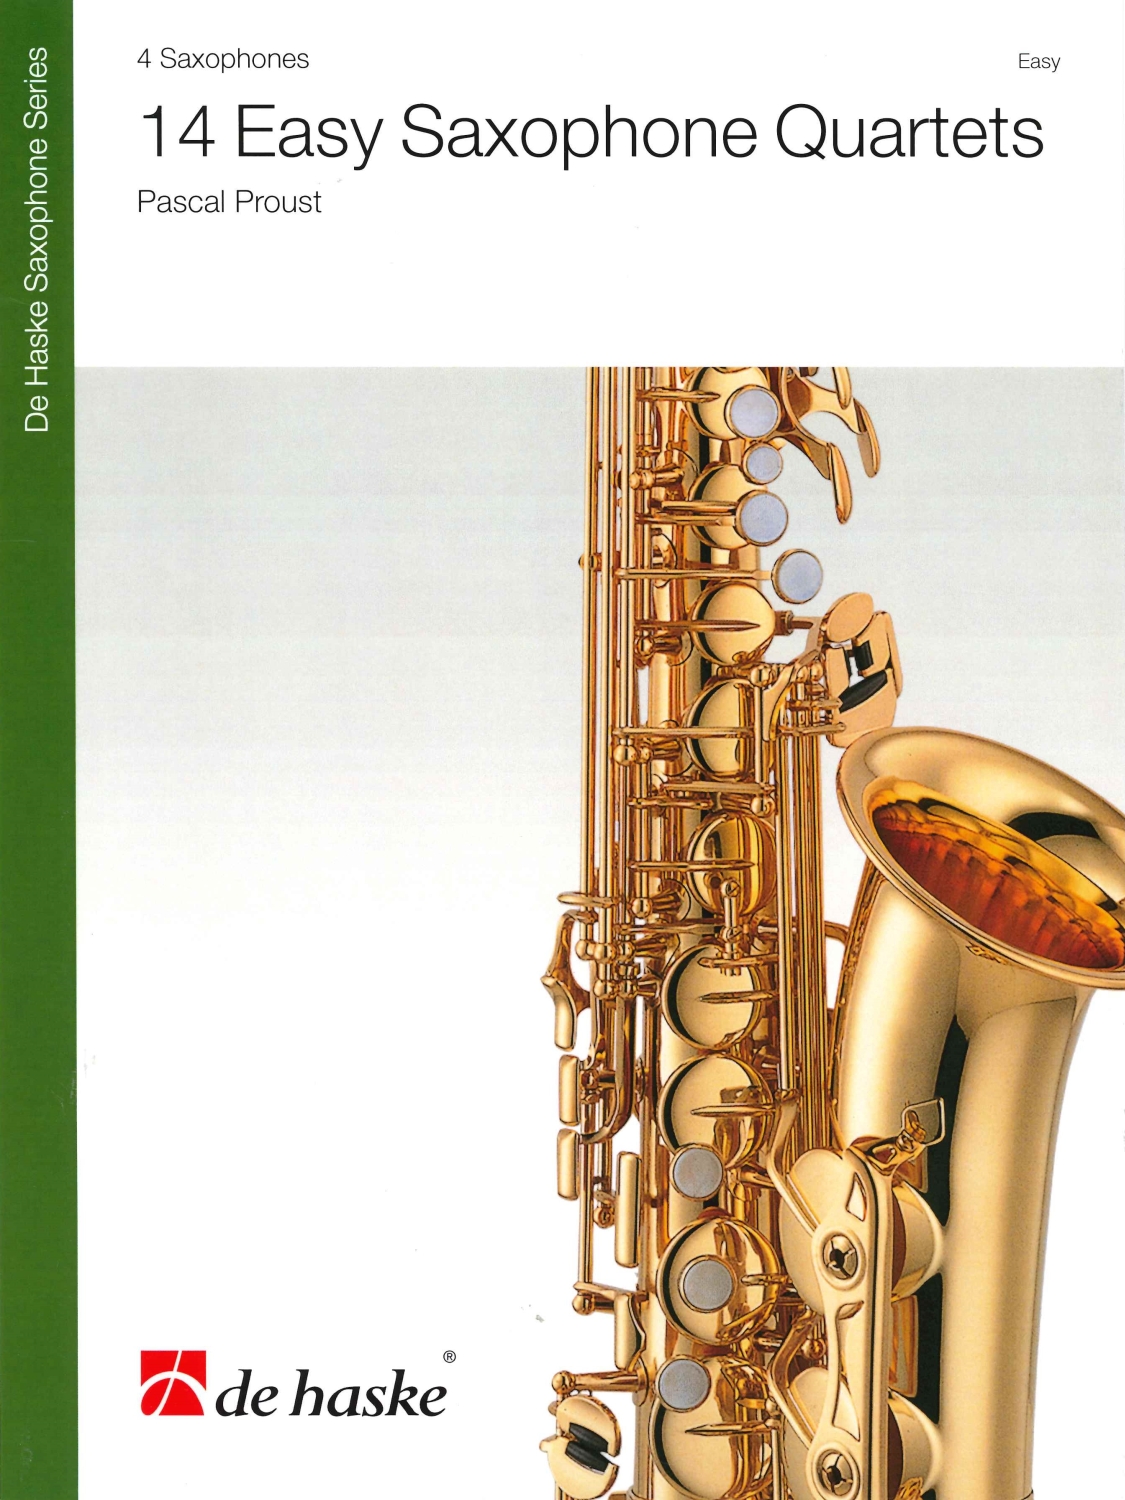 pascal-proust-14-easy-saxophone-quartets-4sax-_pst_0001.JPG